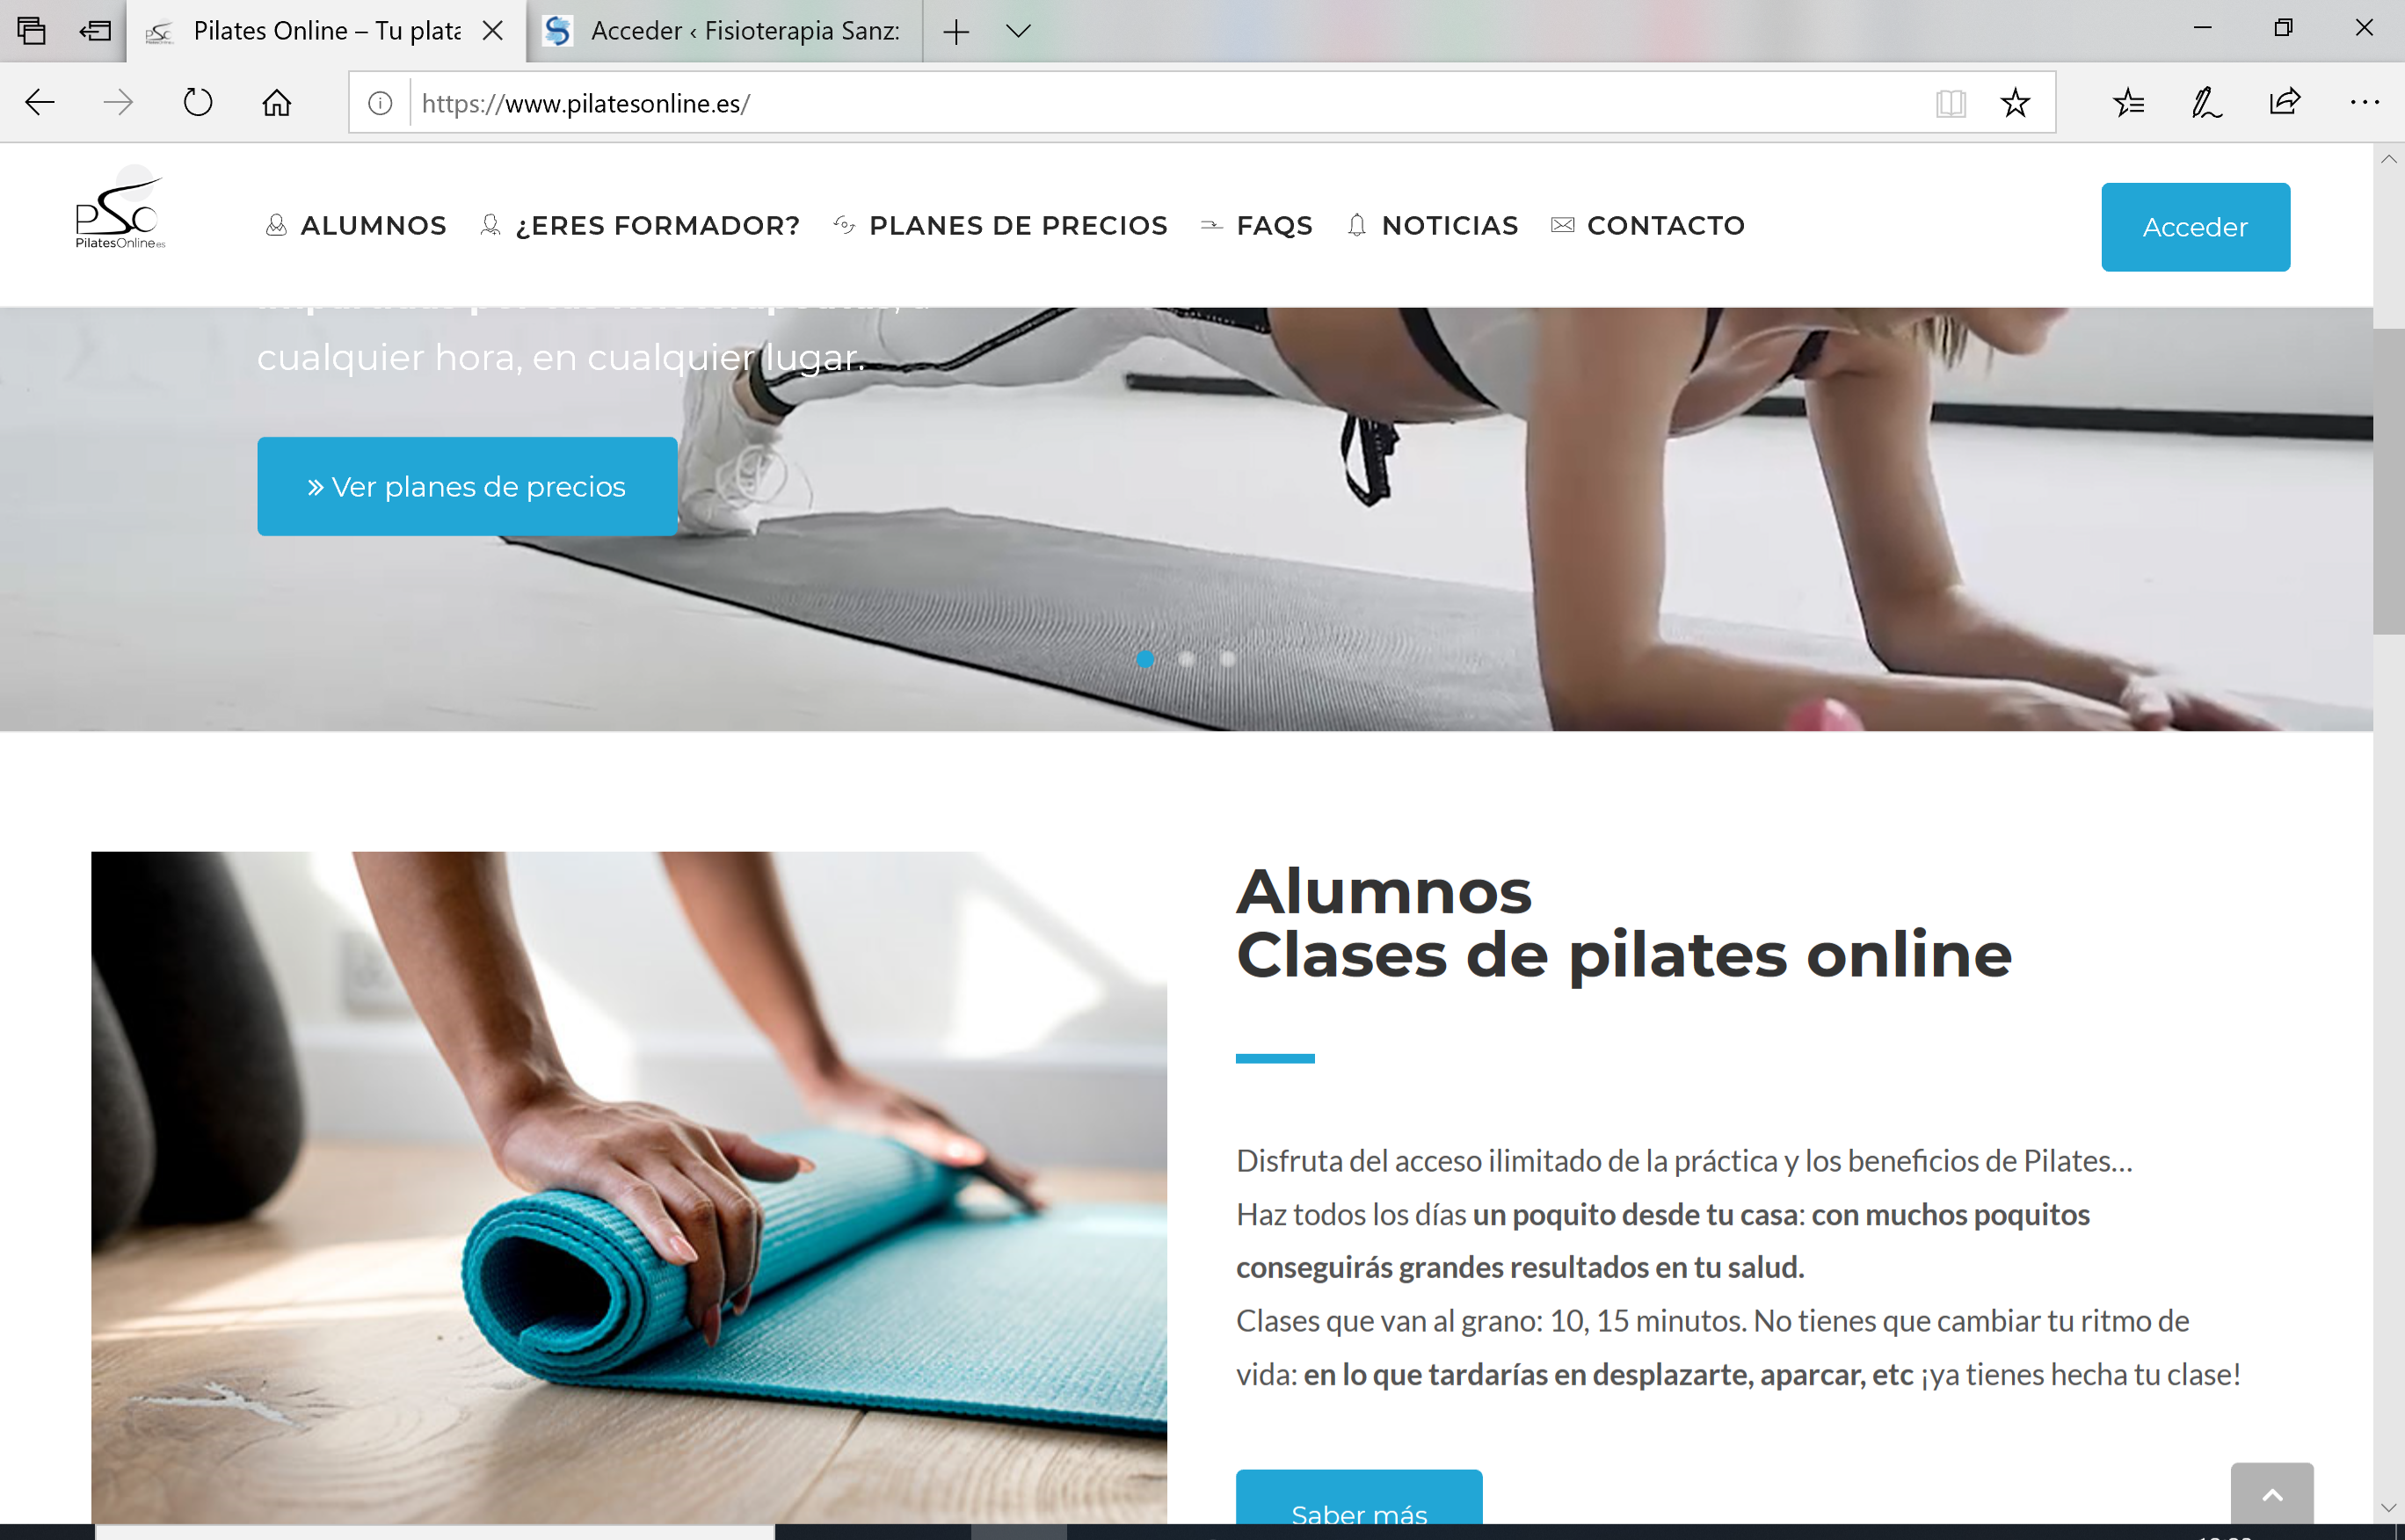 www.pilatesonline.es